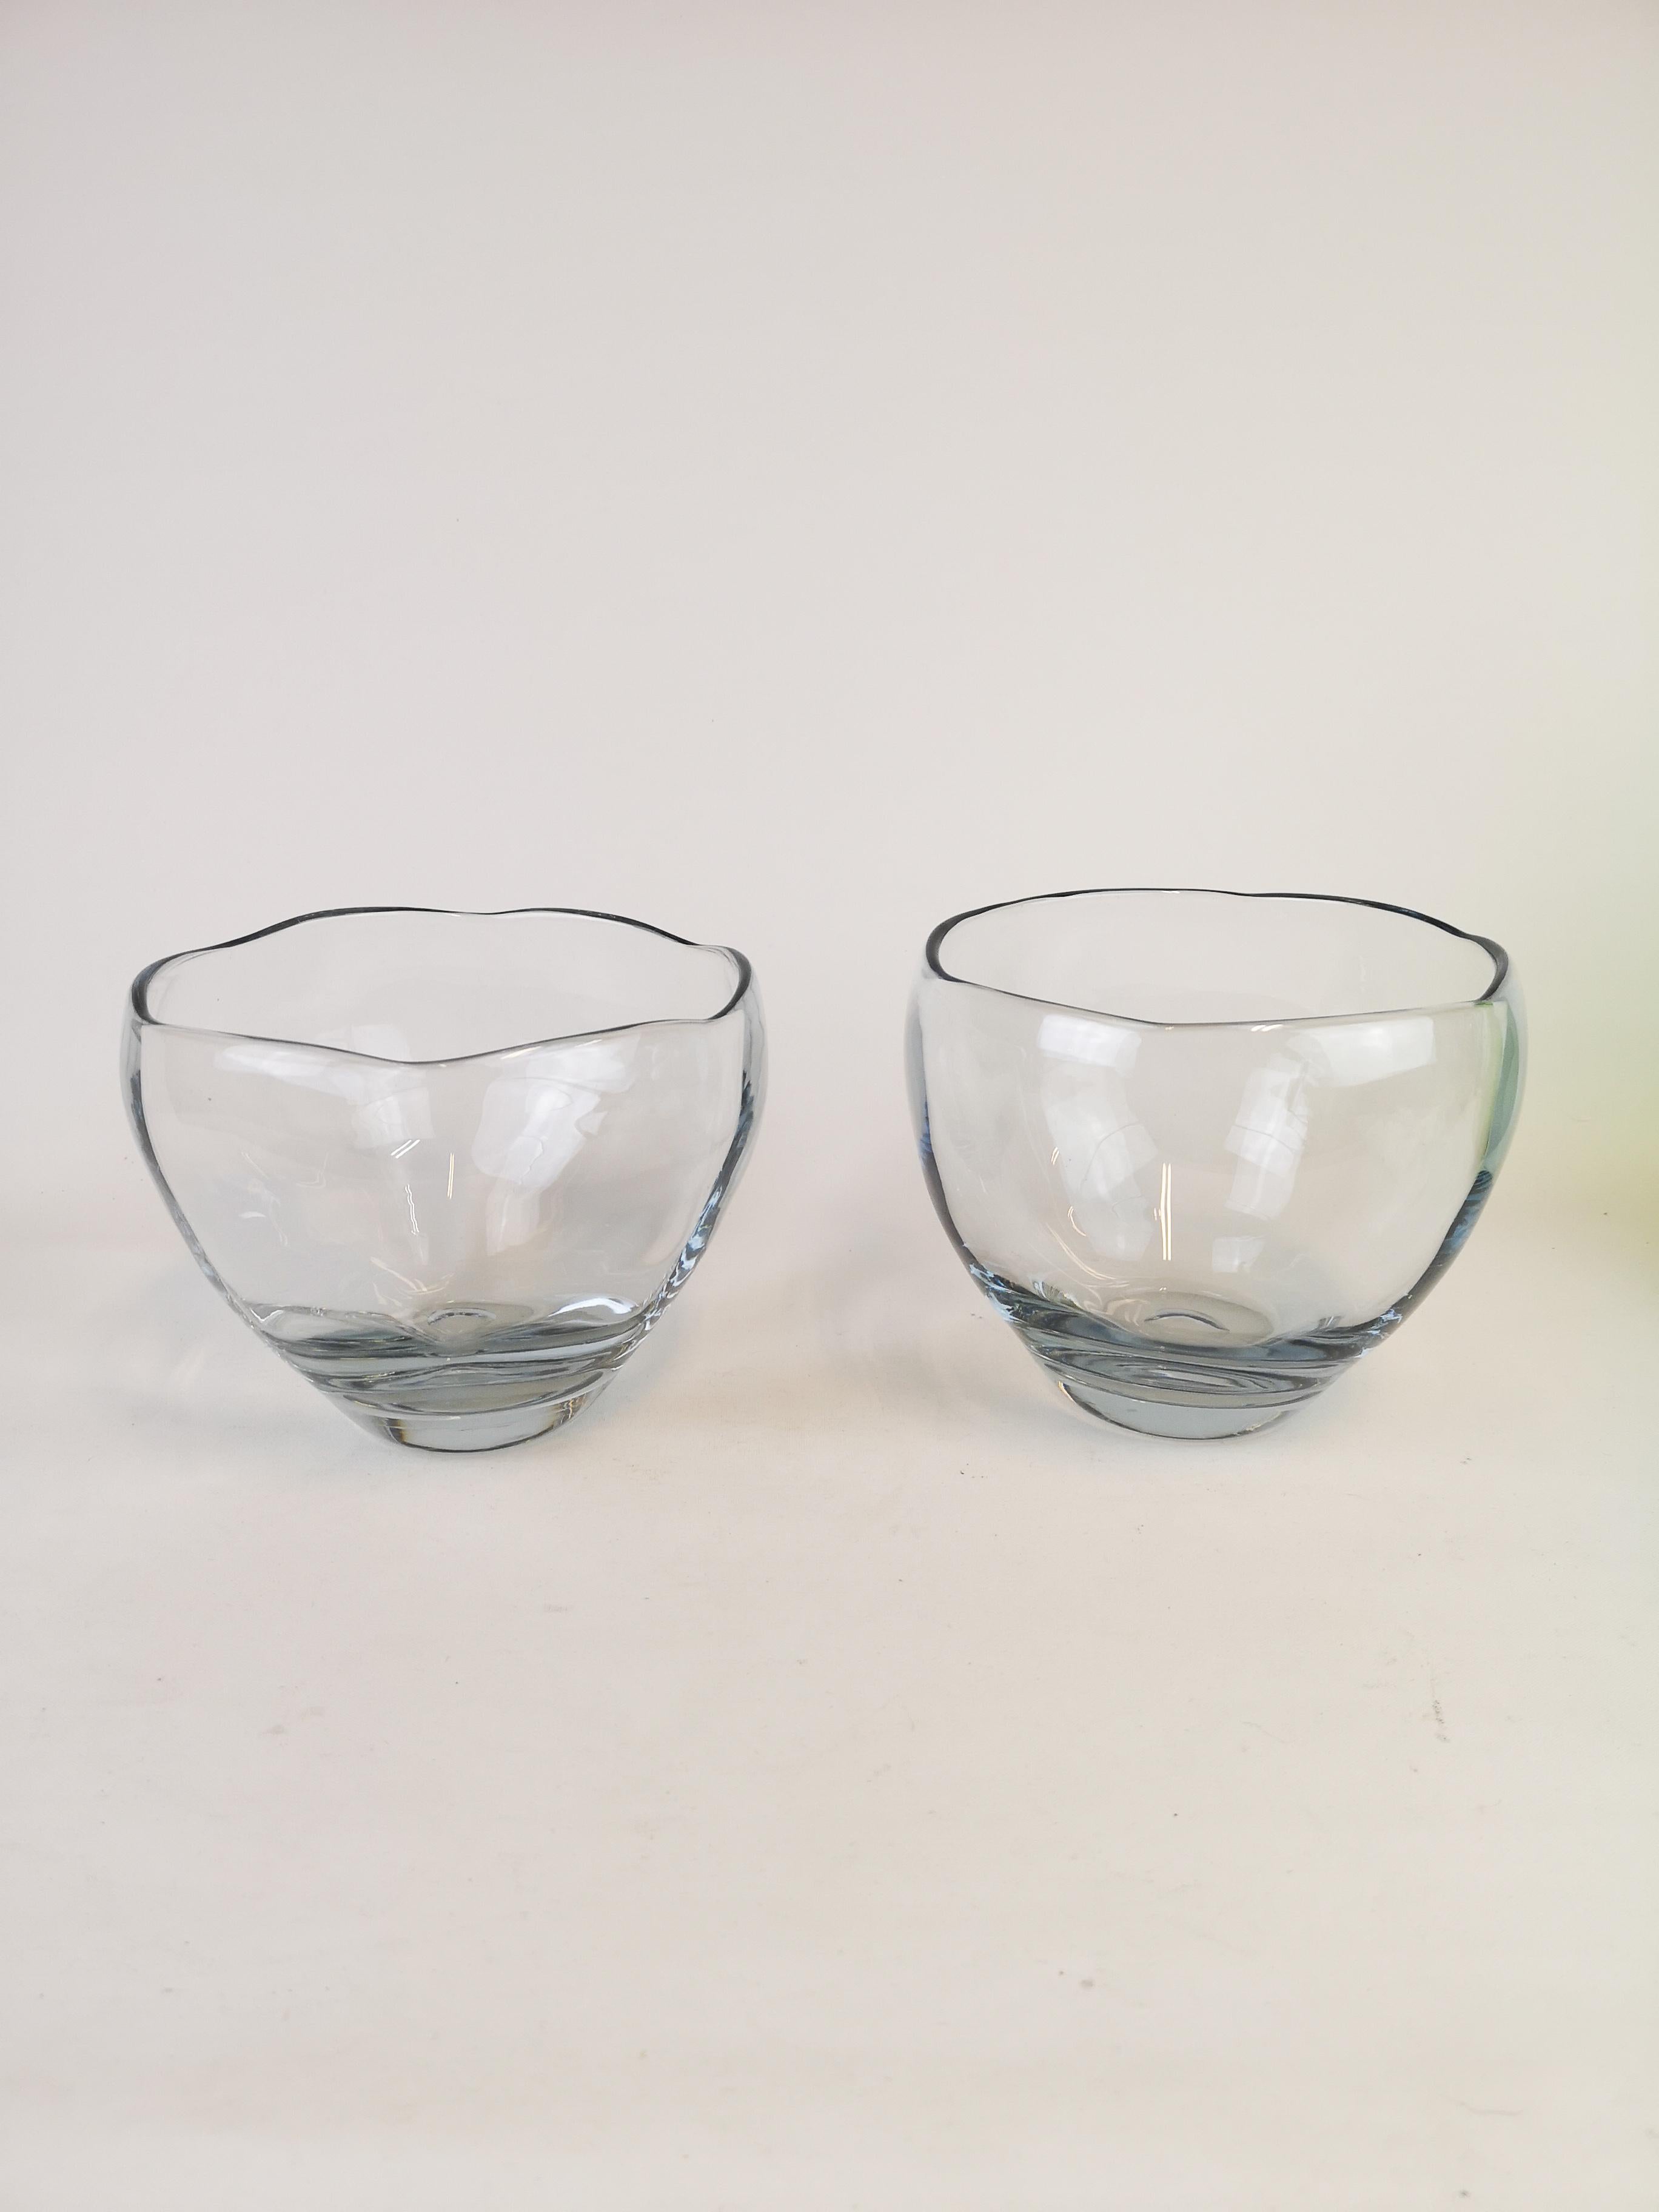 Ensemble de 2 bols en cristal de couleur bleu clair. Fabriqué dans les années 1950 à Strömbergshyttan et conçu par Asta Strömberg.

Bon état.

Mesures : H 16, D 18 cm.
 